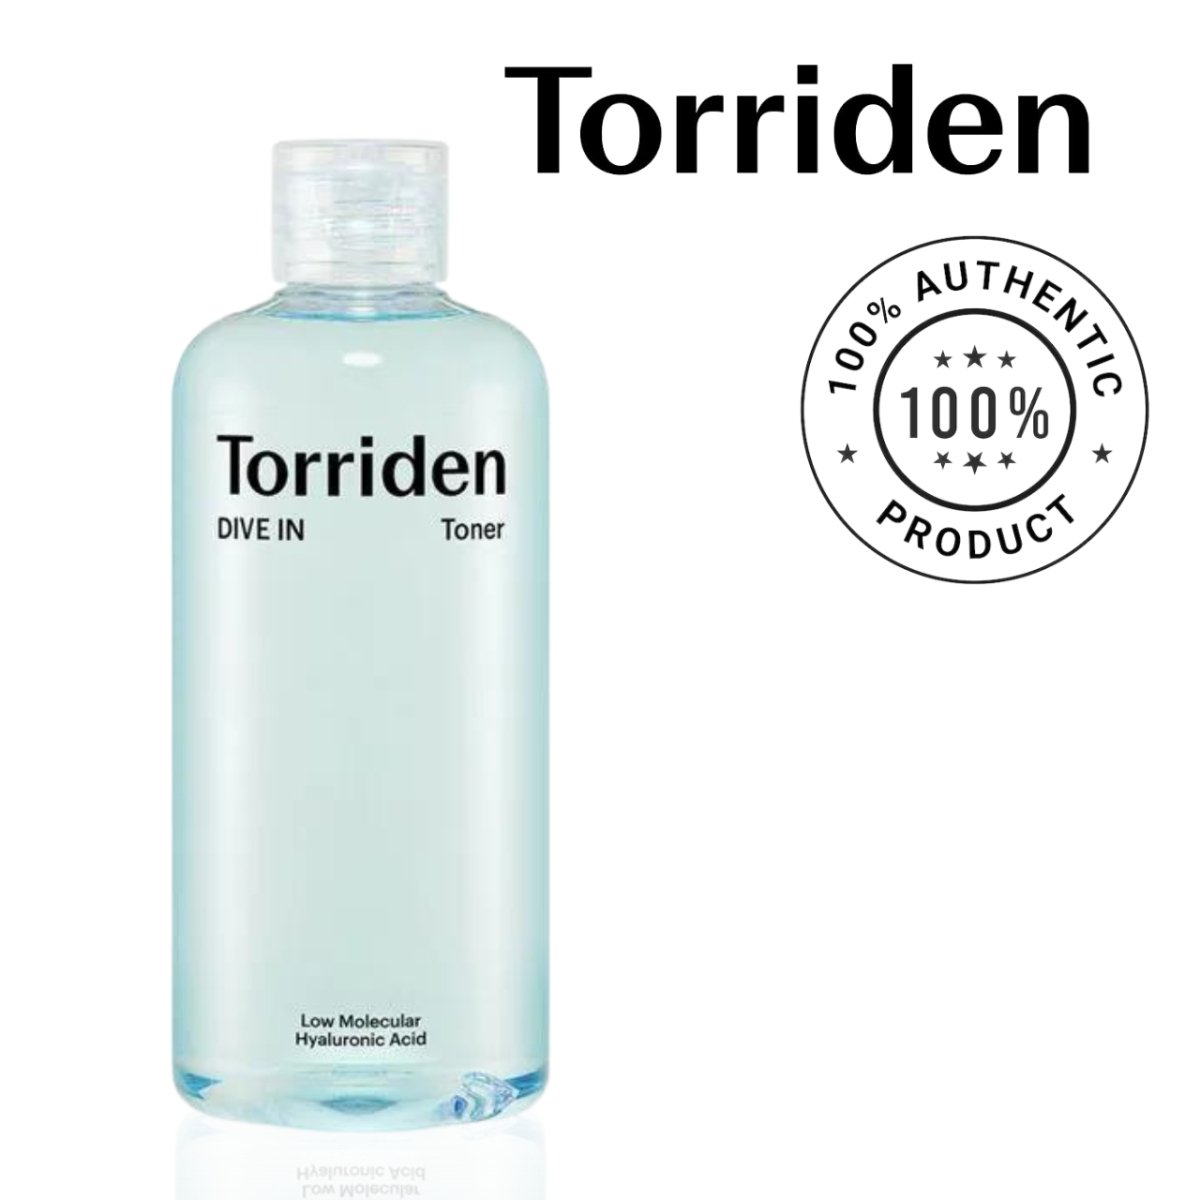 TORRIDEN Dive In Low Molecule Hyaluronic Acid Toner